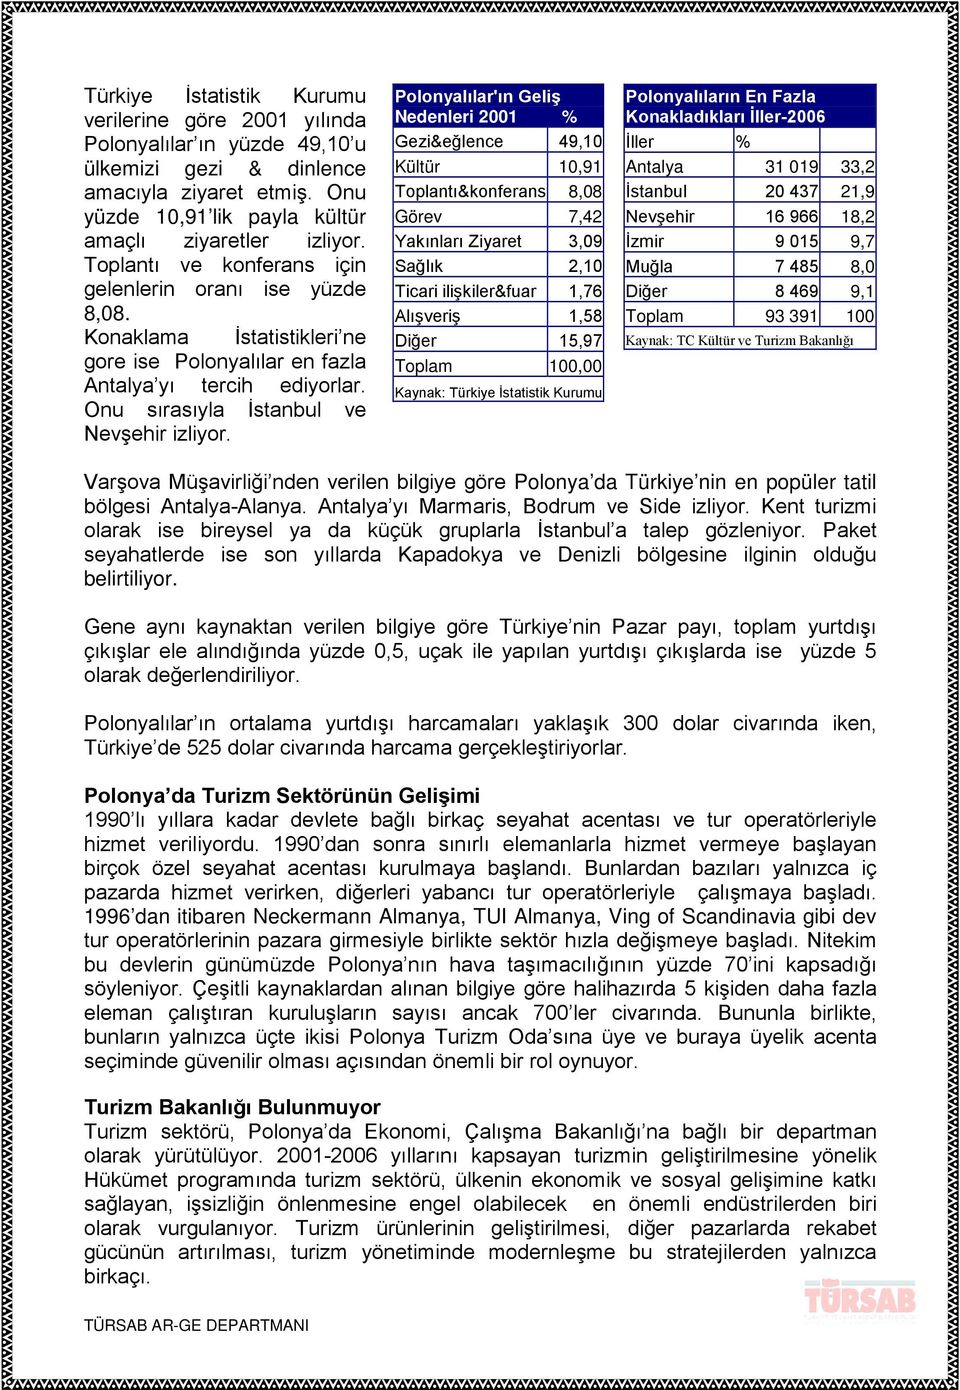 Polonyalılar'ın Geliş Nedenleri 2001 % Gezi&eğlence 49,10 Kültür 10,91 Toplantı&konferans 8,08 Görev 7,42 Yakınları Ziyaret 3,09 Sağlık 2,10 Ticari ilişkiler&fuar 1,76 Alışveriş 1,58 Diğer 15,97